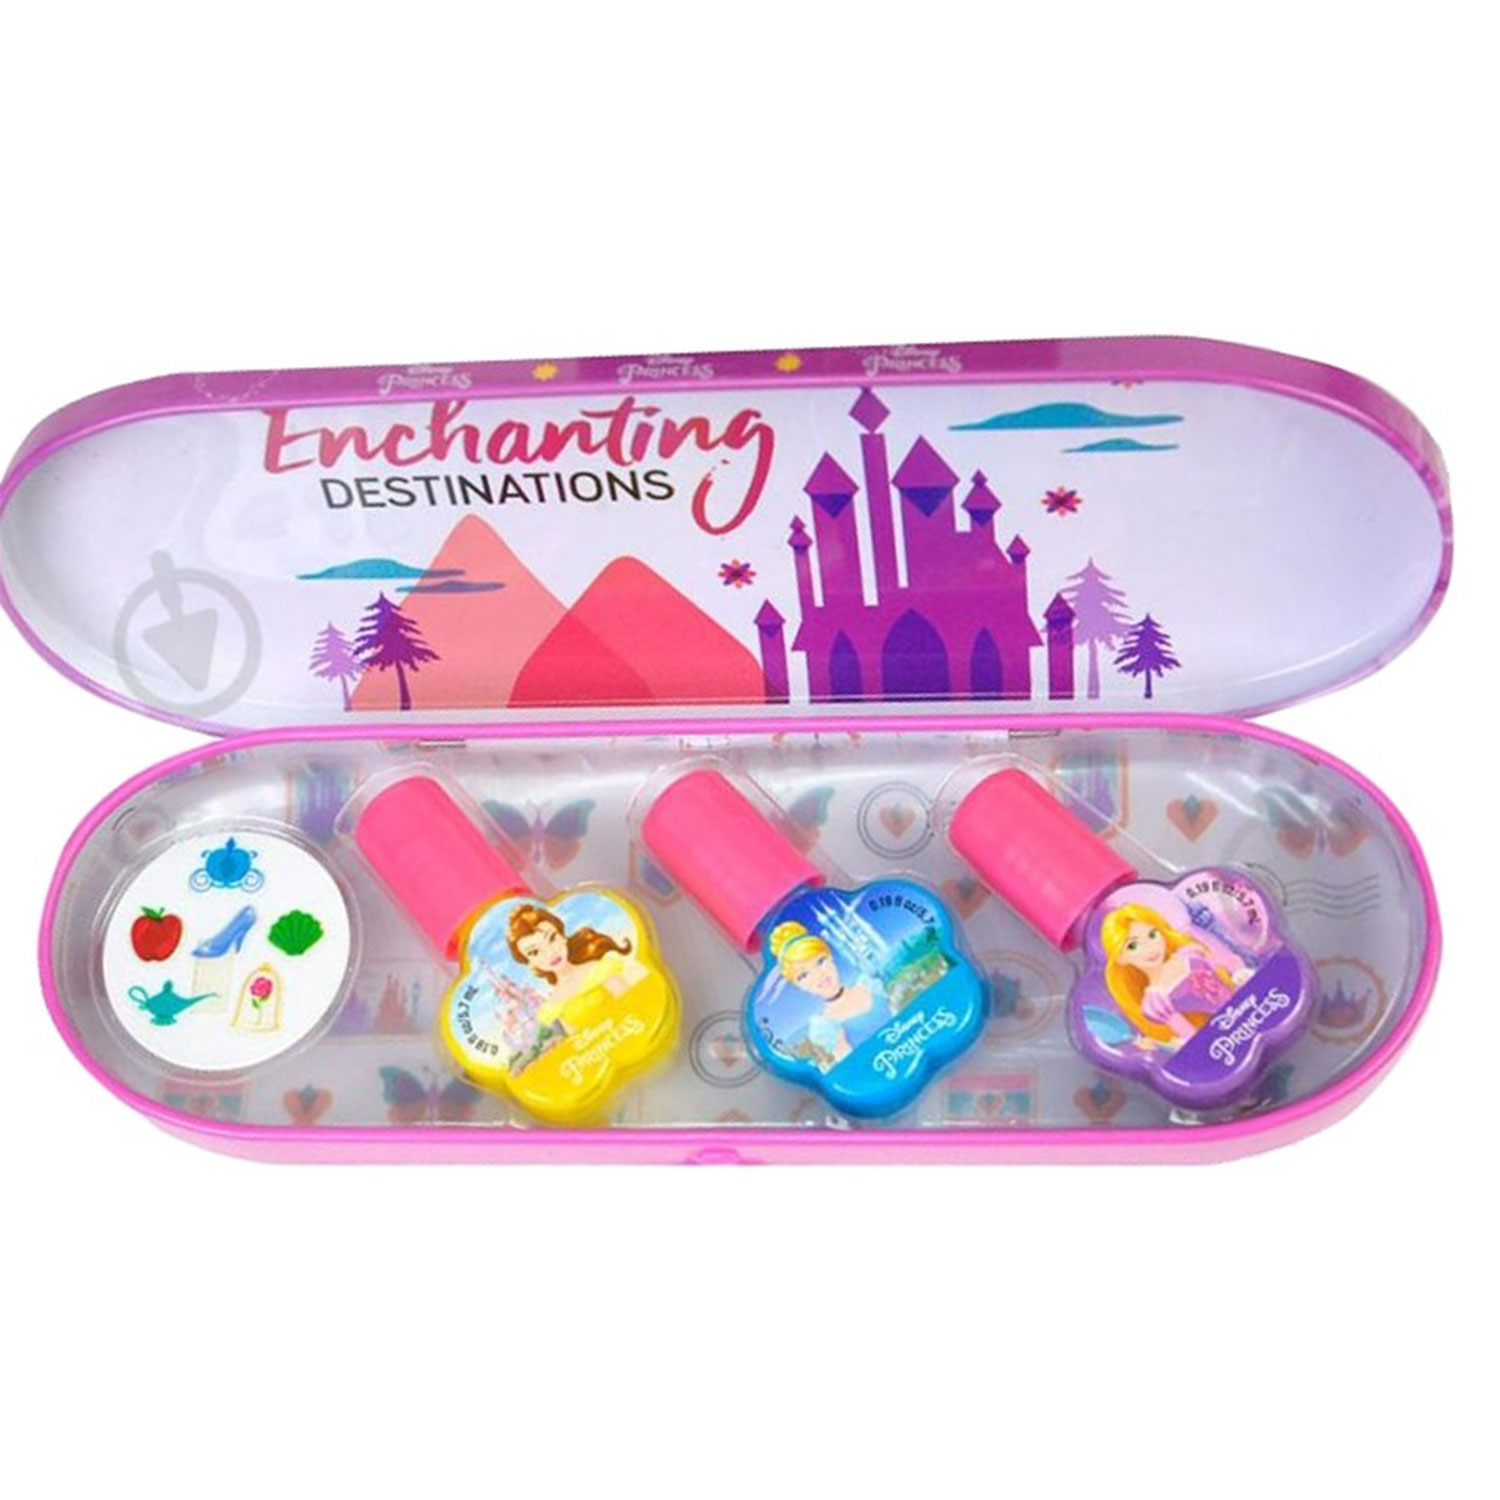 frozen игровой набор детской декоративной косметики в пенале